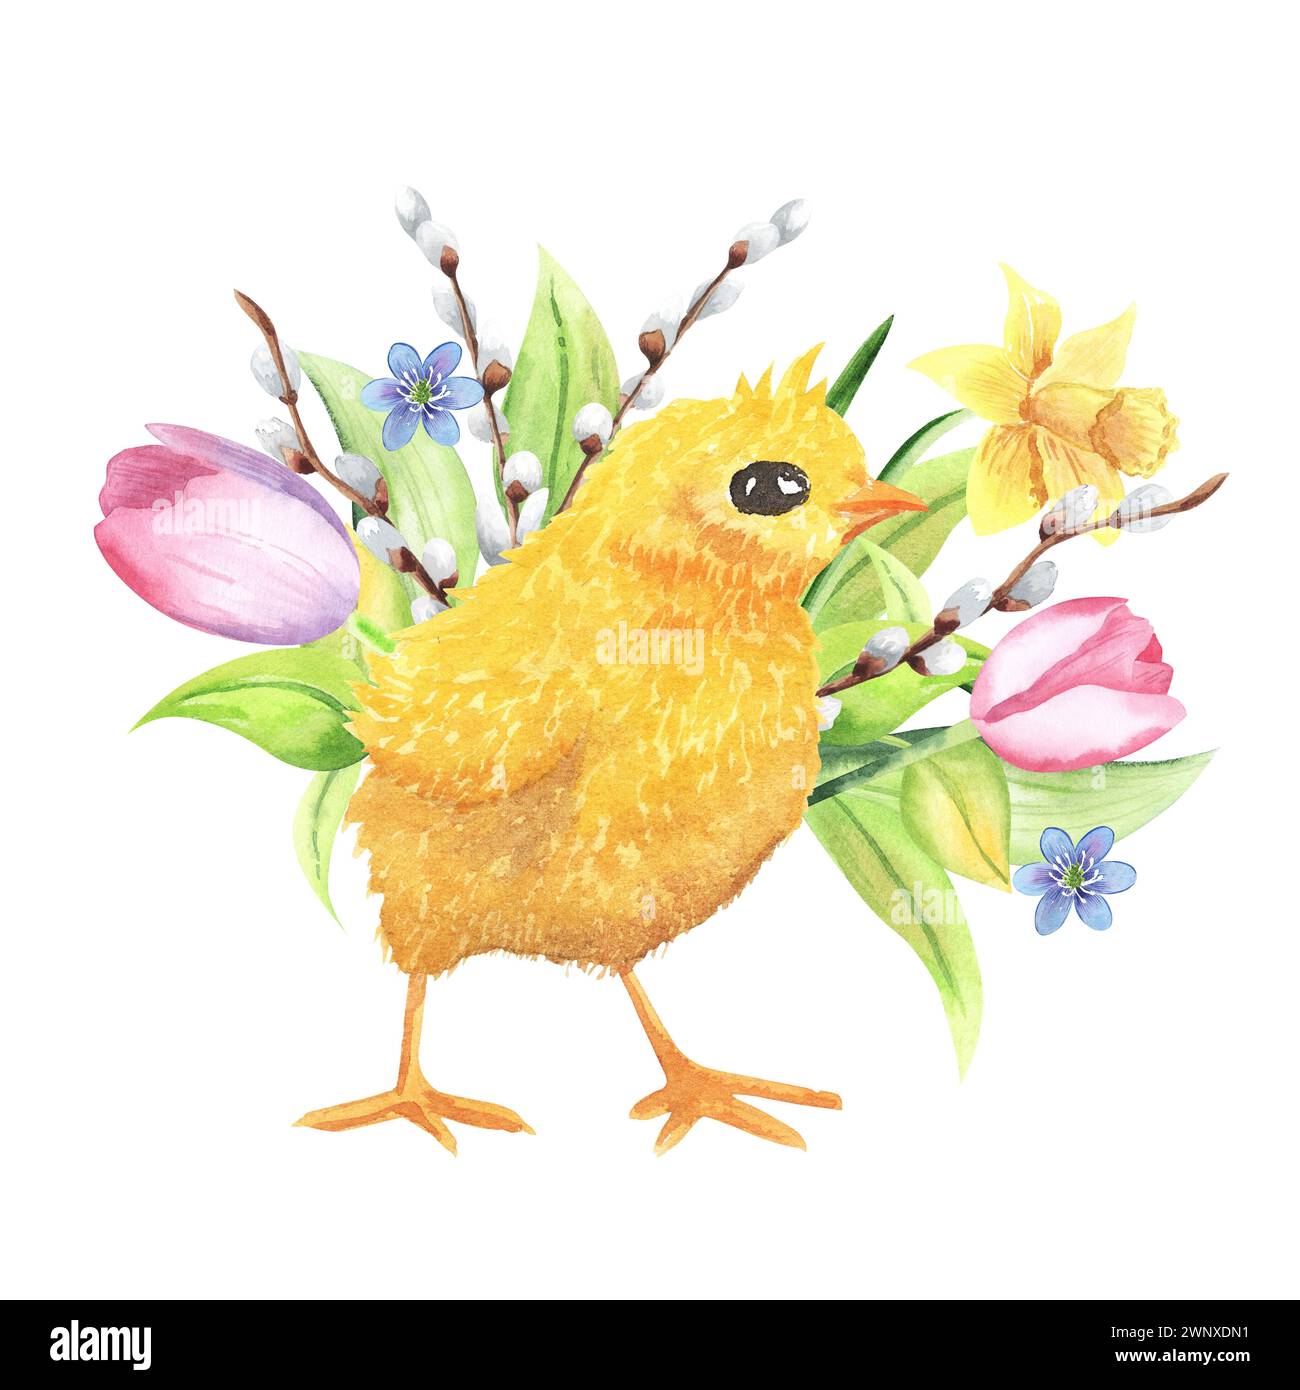 Illustration aquarelle de Pâques de poussin, fleurs, tulipes, narcisse, brindilles de saule. coloré, isolé, fond blanc. dessiné à la main Banque D'Images